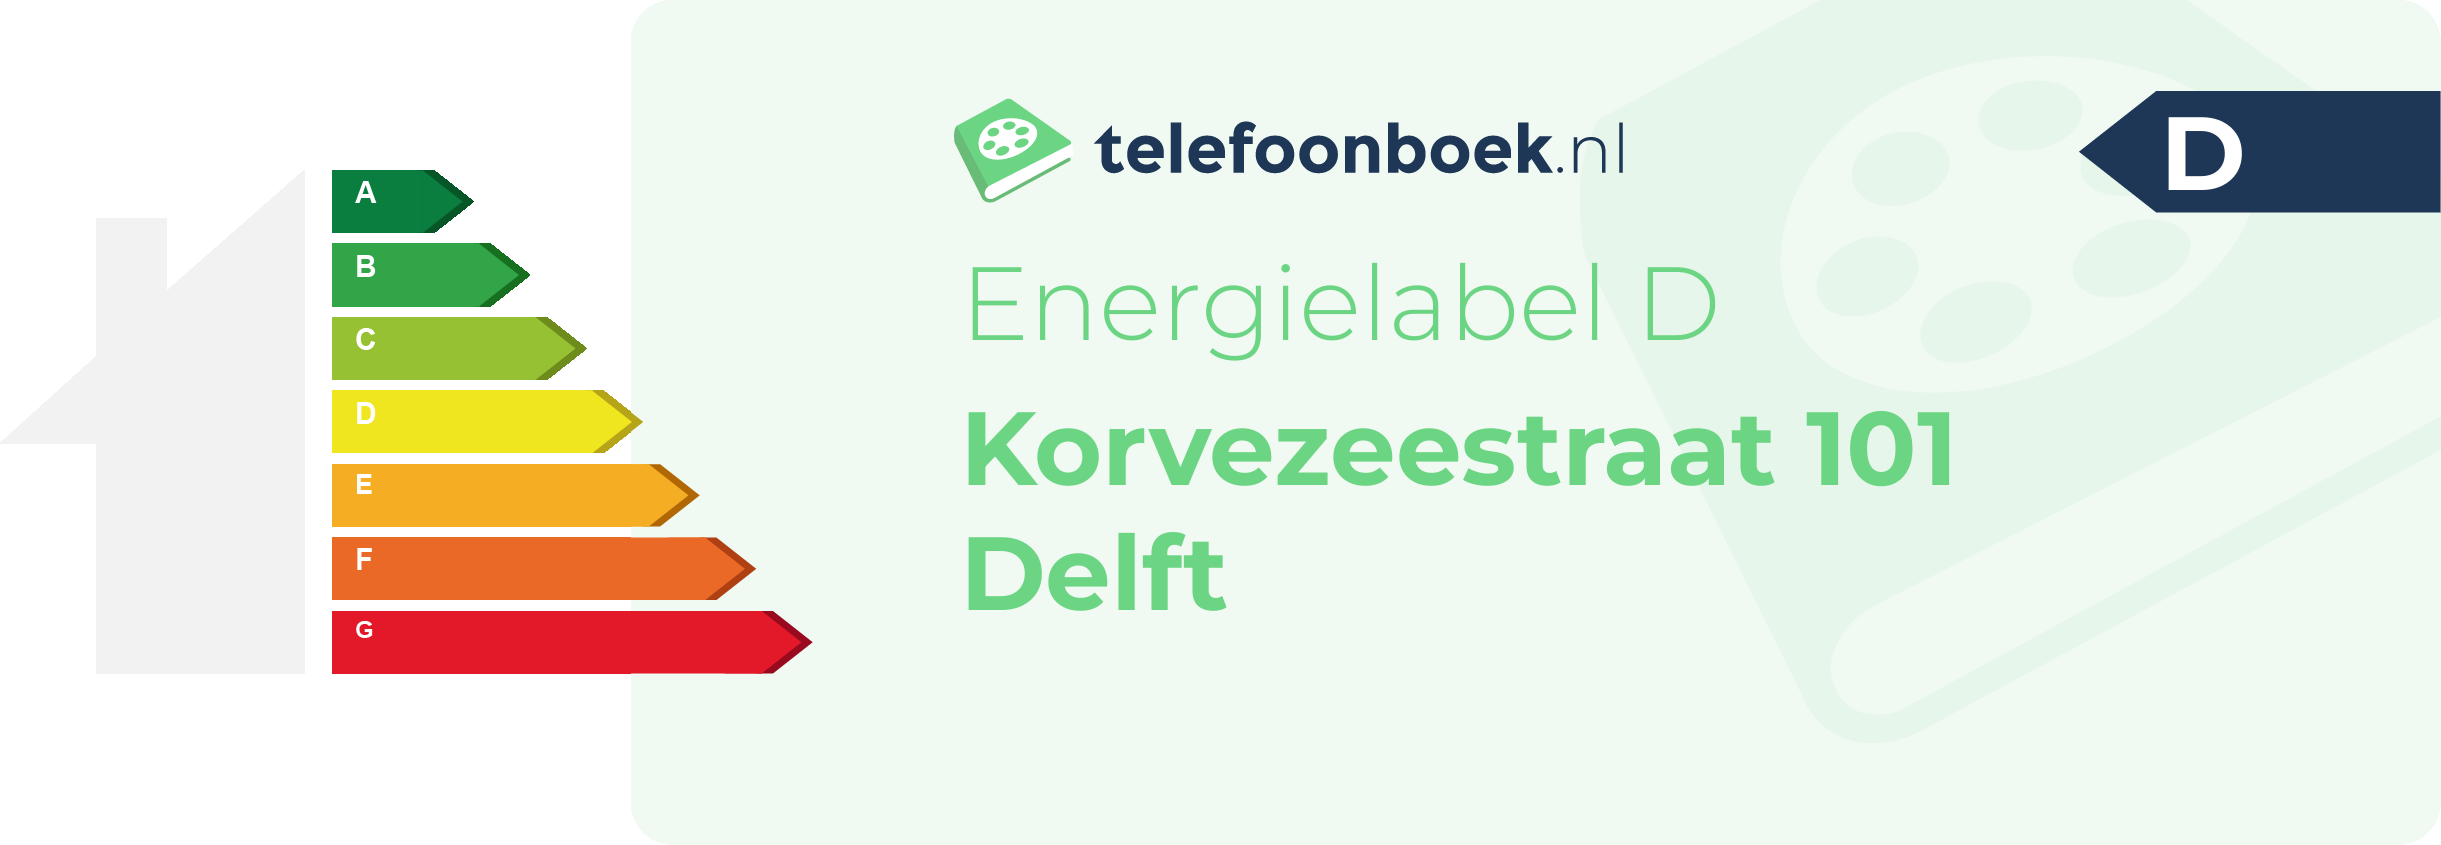 Energielabel Korvezeestraat 101 Delft